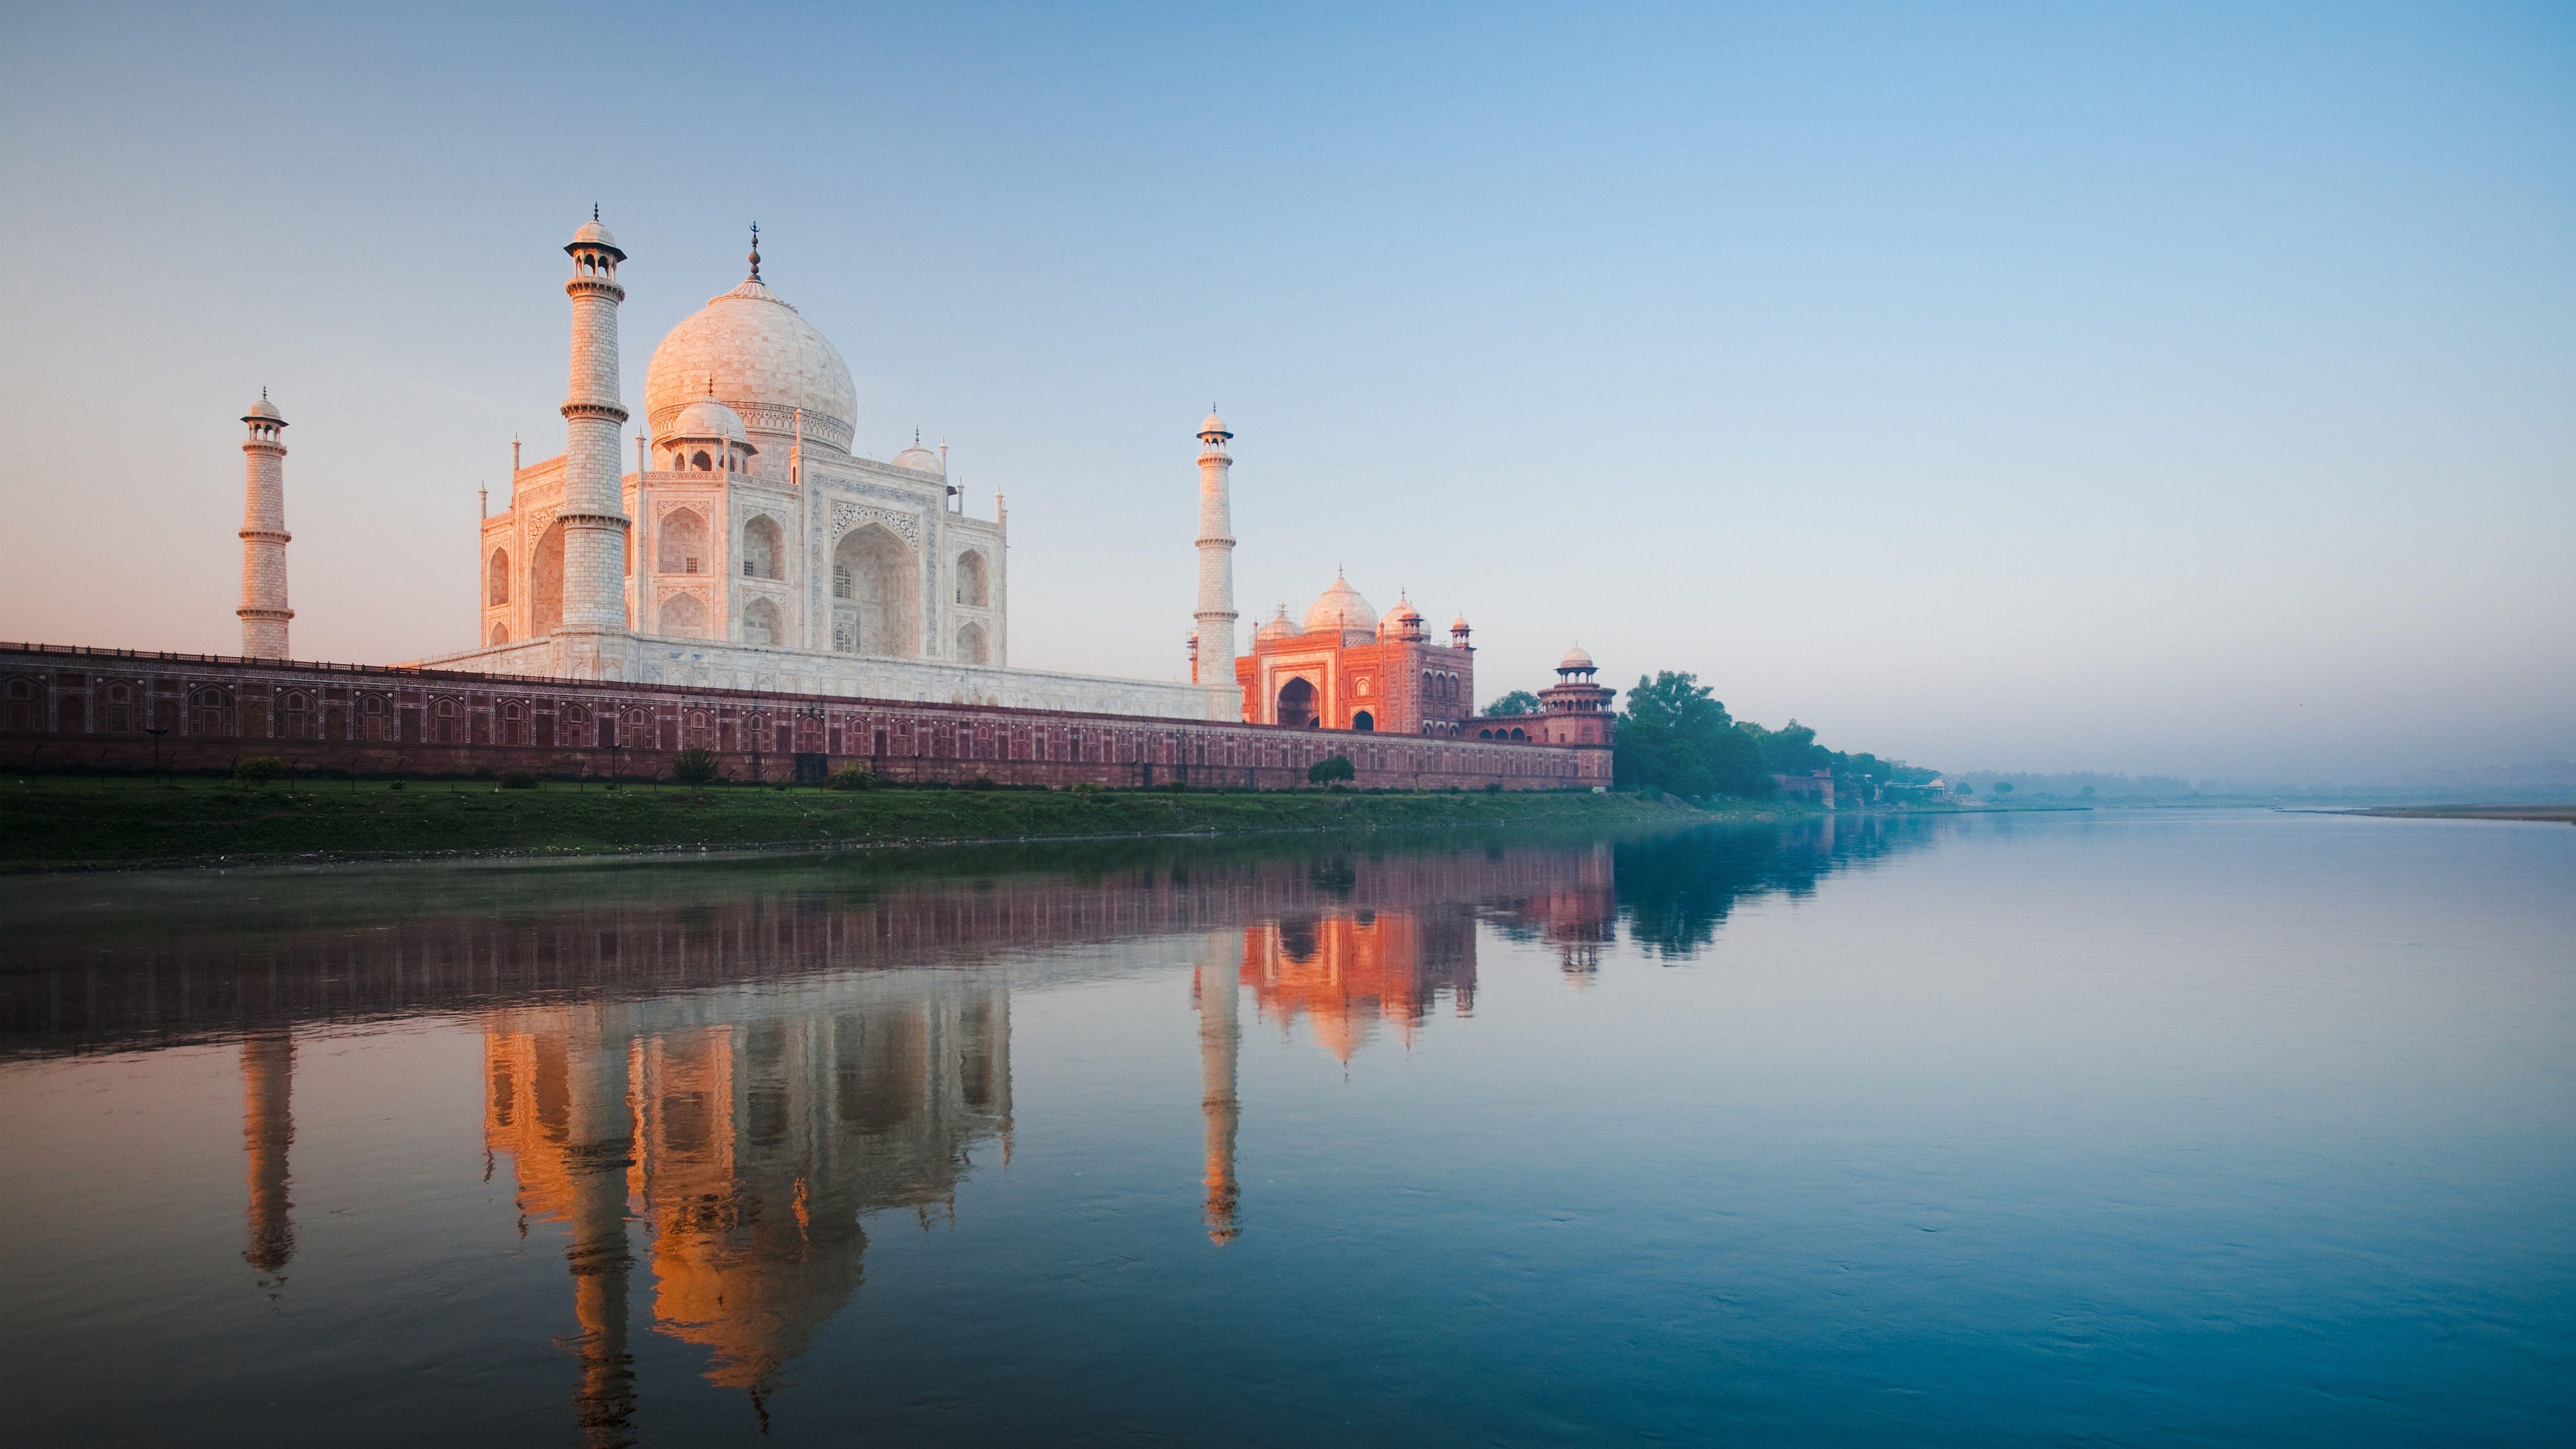 Hình Nền Taj Mahal Hd Top Những Hình Ảnh Đẹp 5622